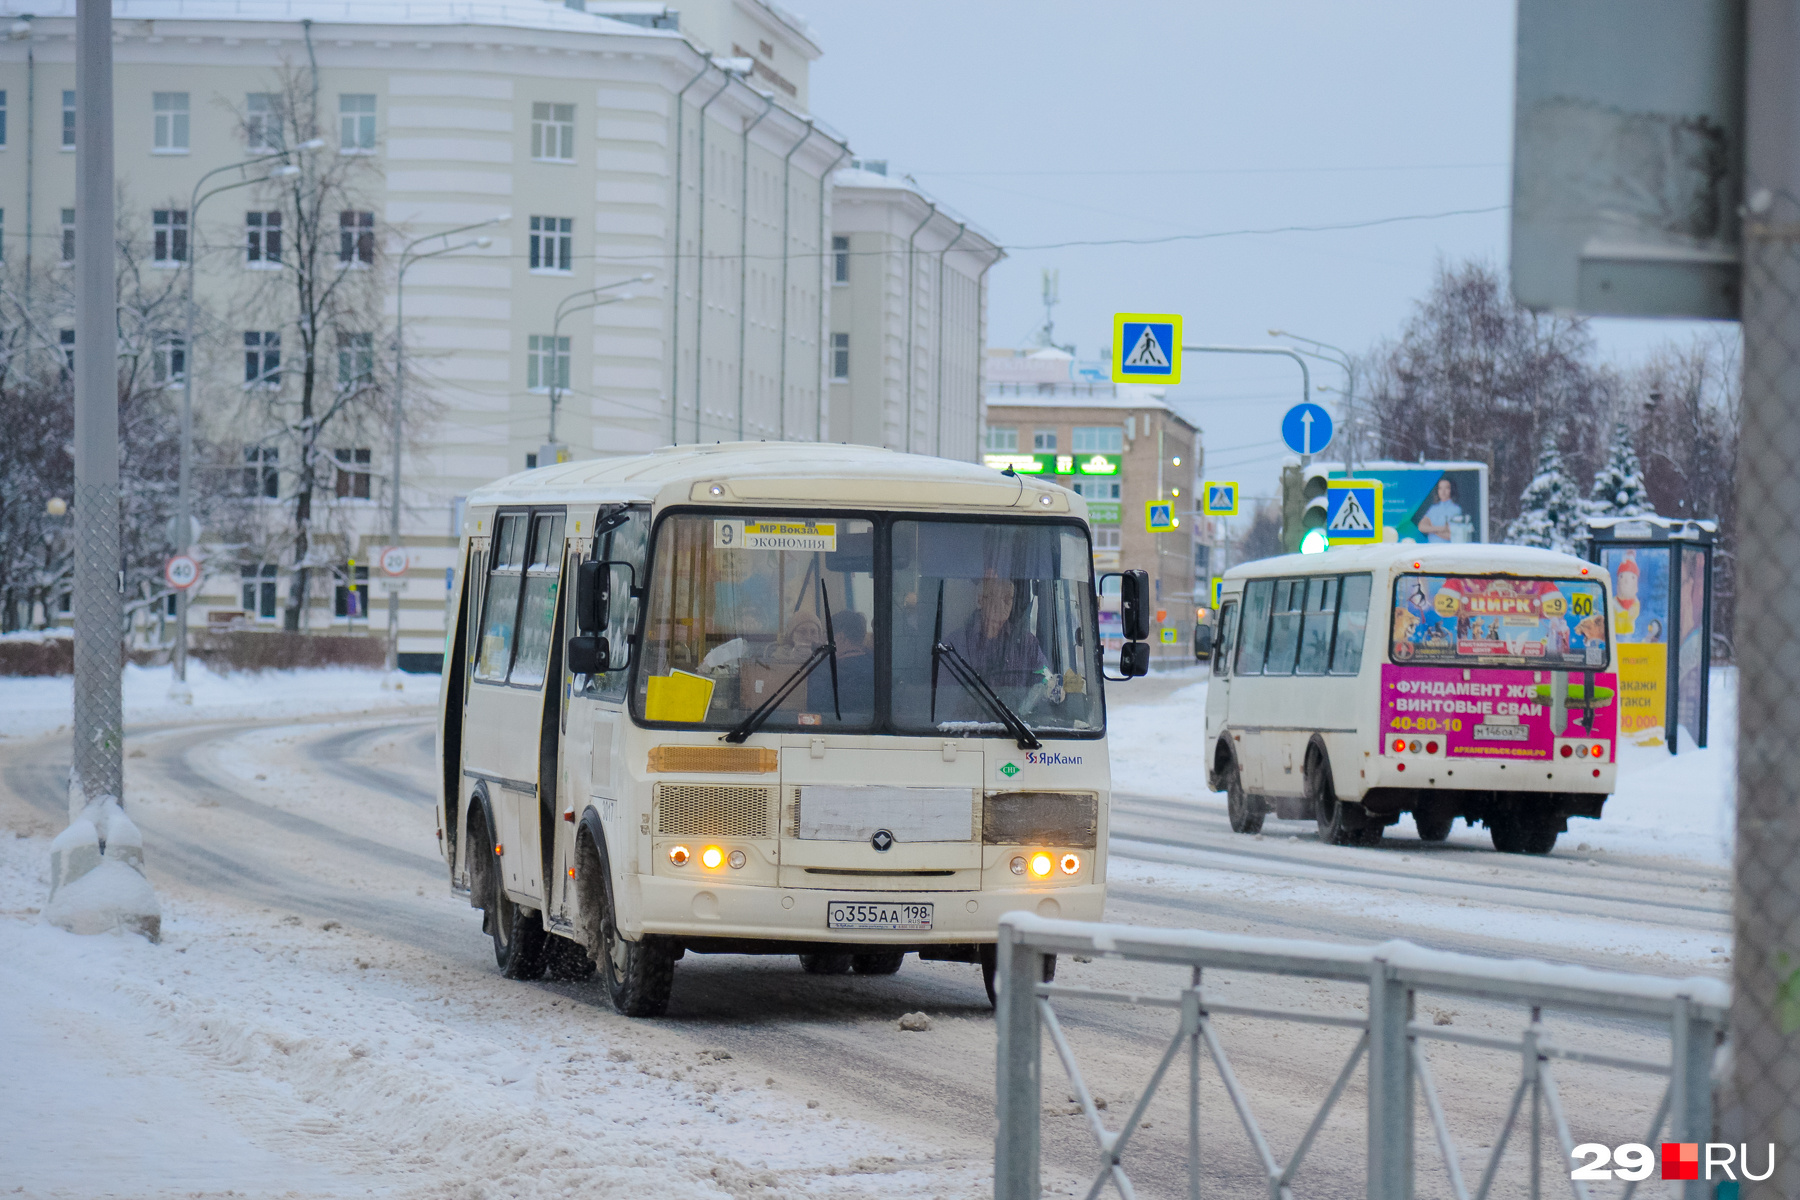 К полудню автобусы начали ездить активнее — <a href="https://29.ru/text/gorod/2021/12/31/70355423/?utm_source=vk&utm_medium=social&utm_campaign=29" class="_" target="_blank">вот по какому расписанию они сегодня работают</a>